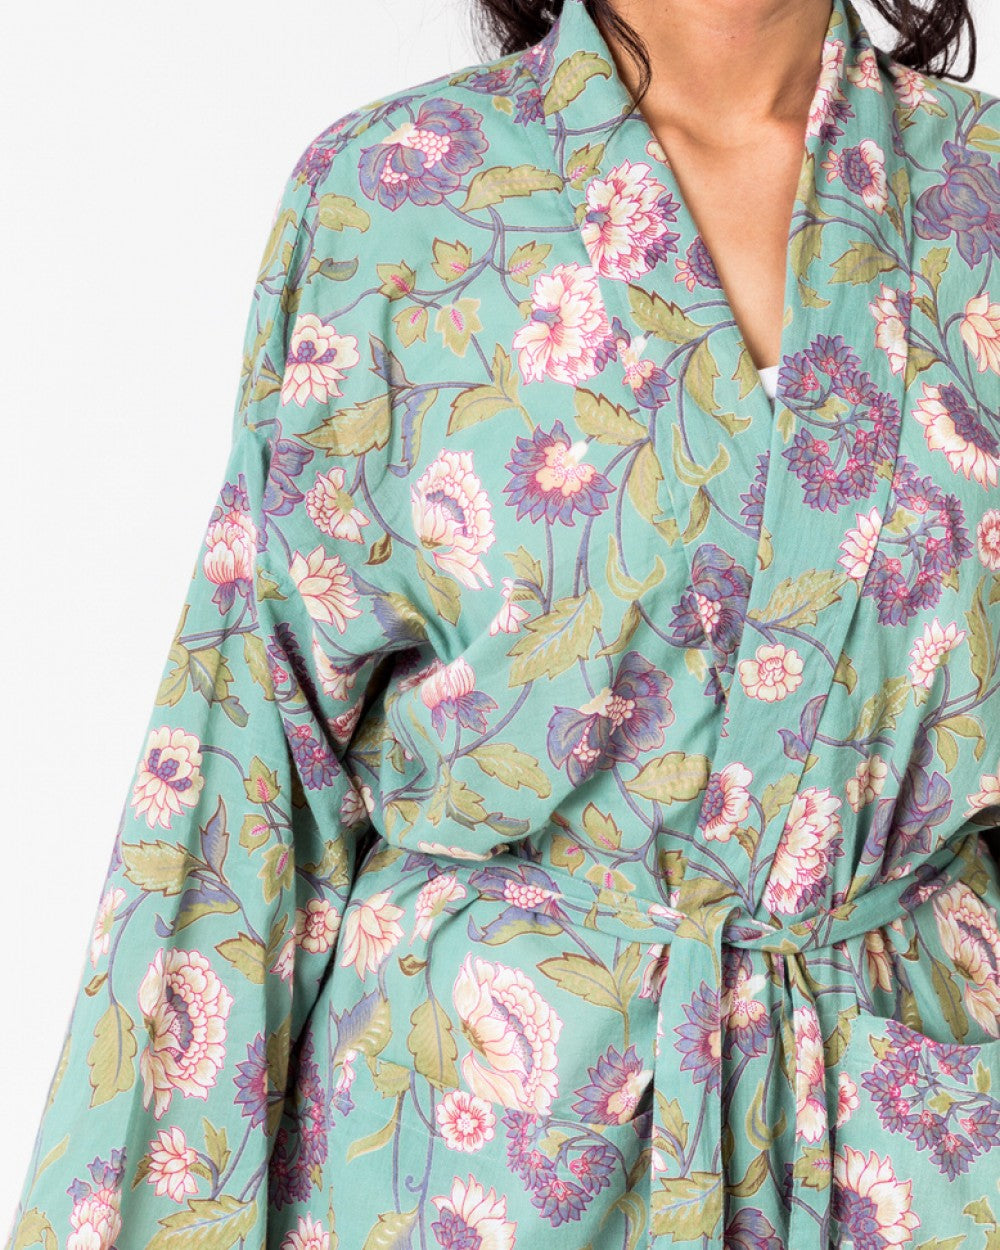 Lily Aqua kimono cotton robe by Floressents